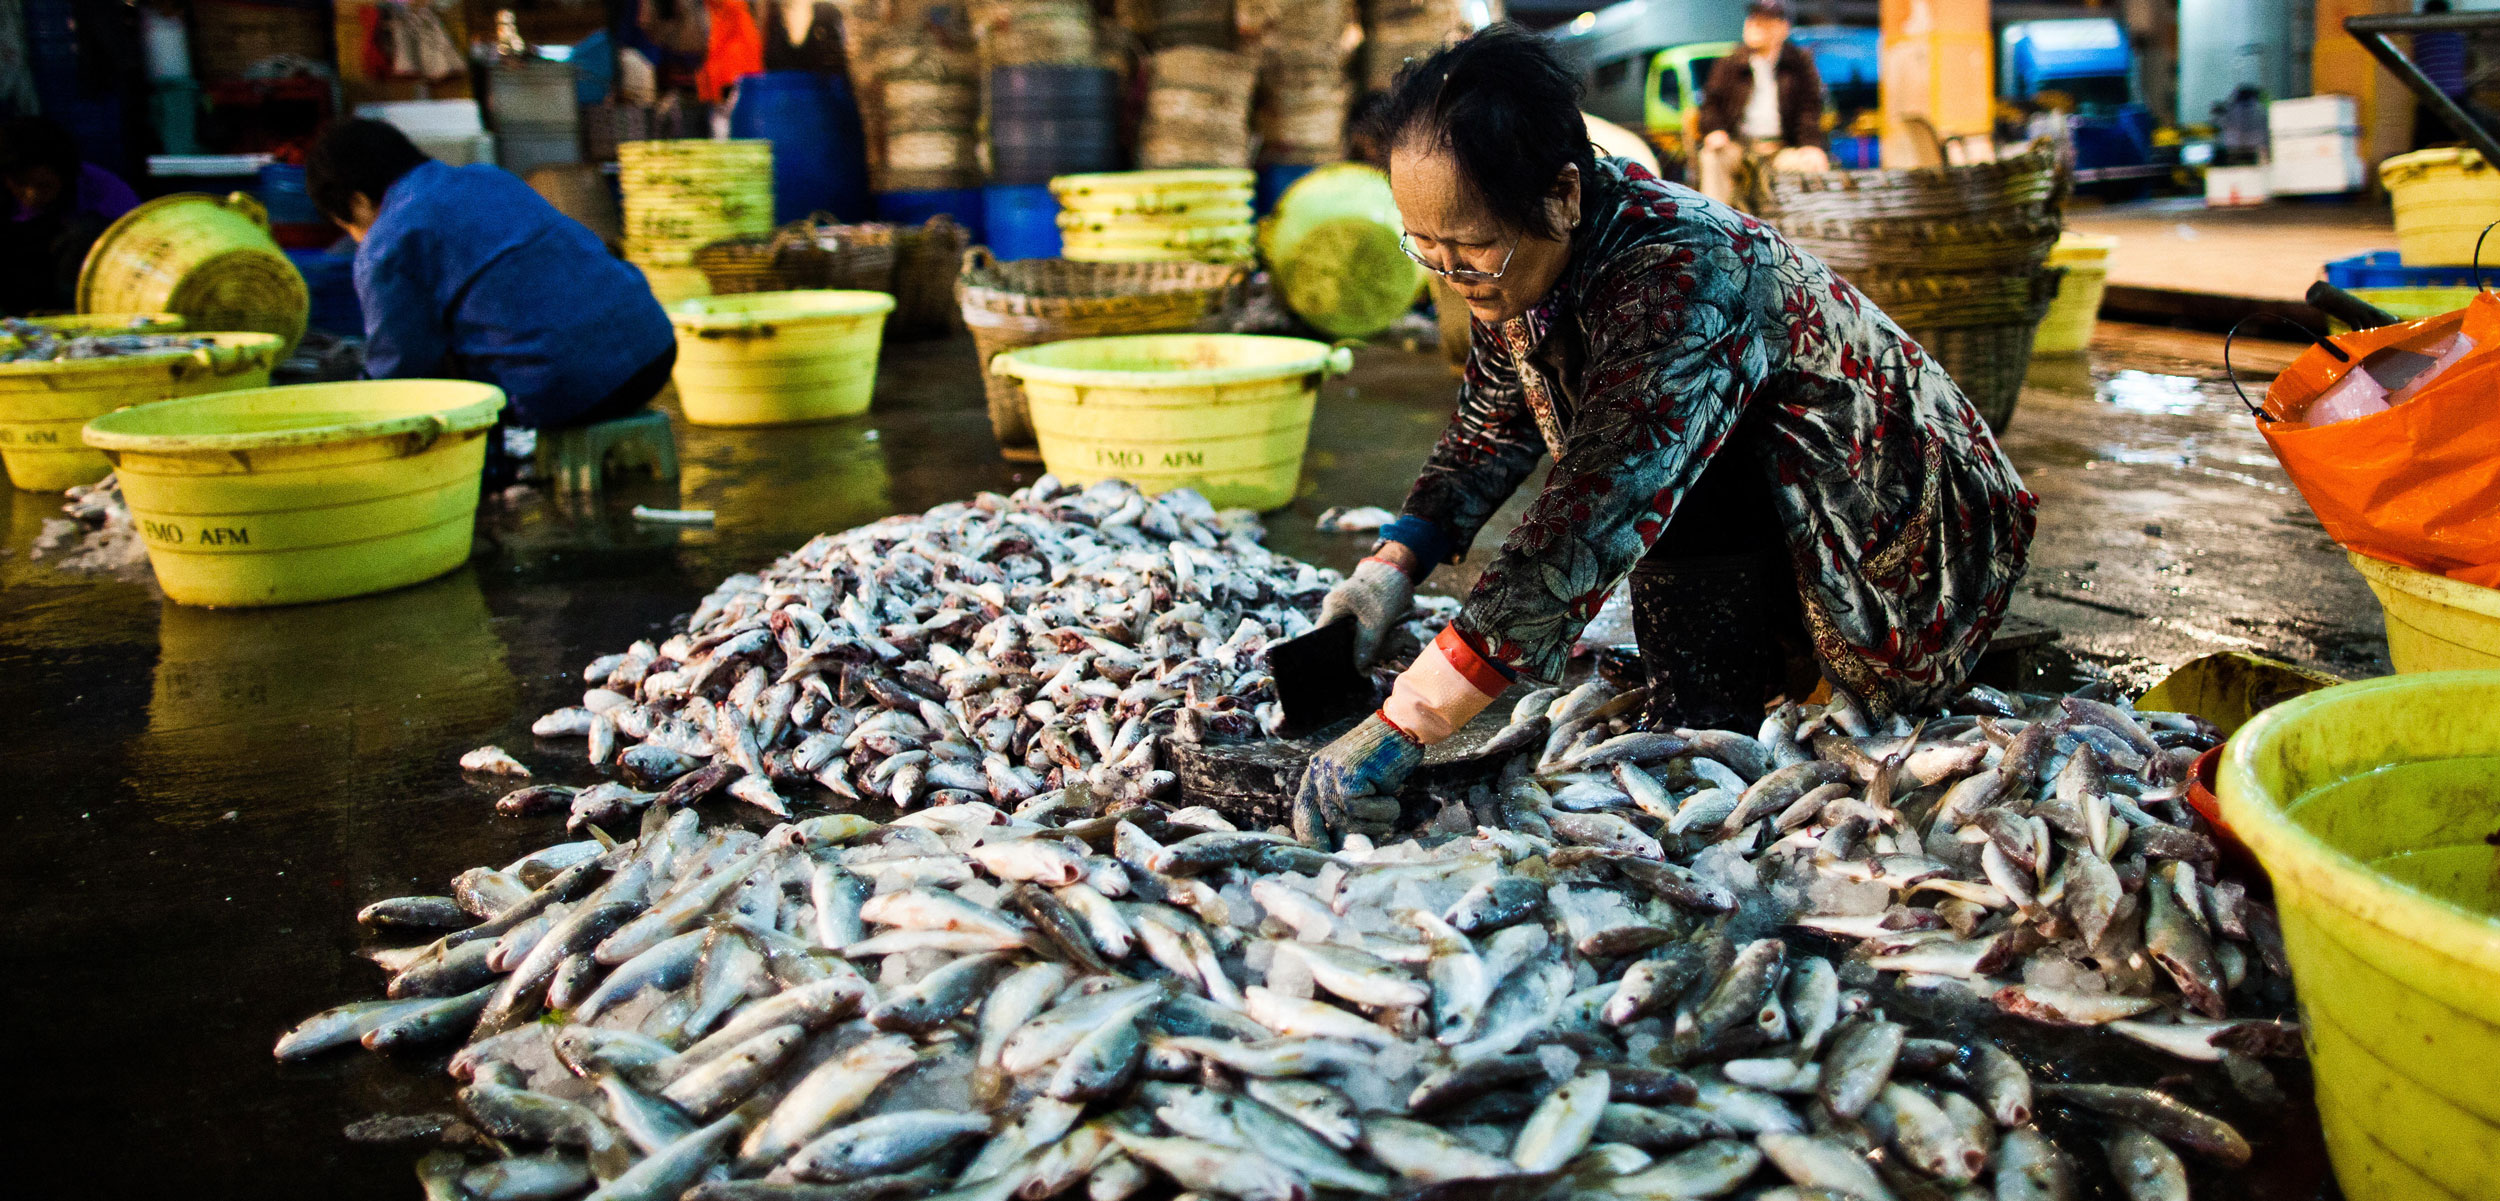 Woman sorting fish at Aberdeen Fish Market, Hong Kong, China